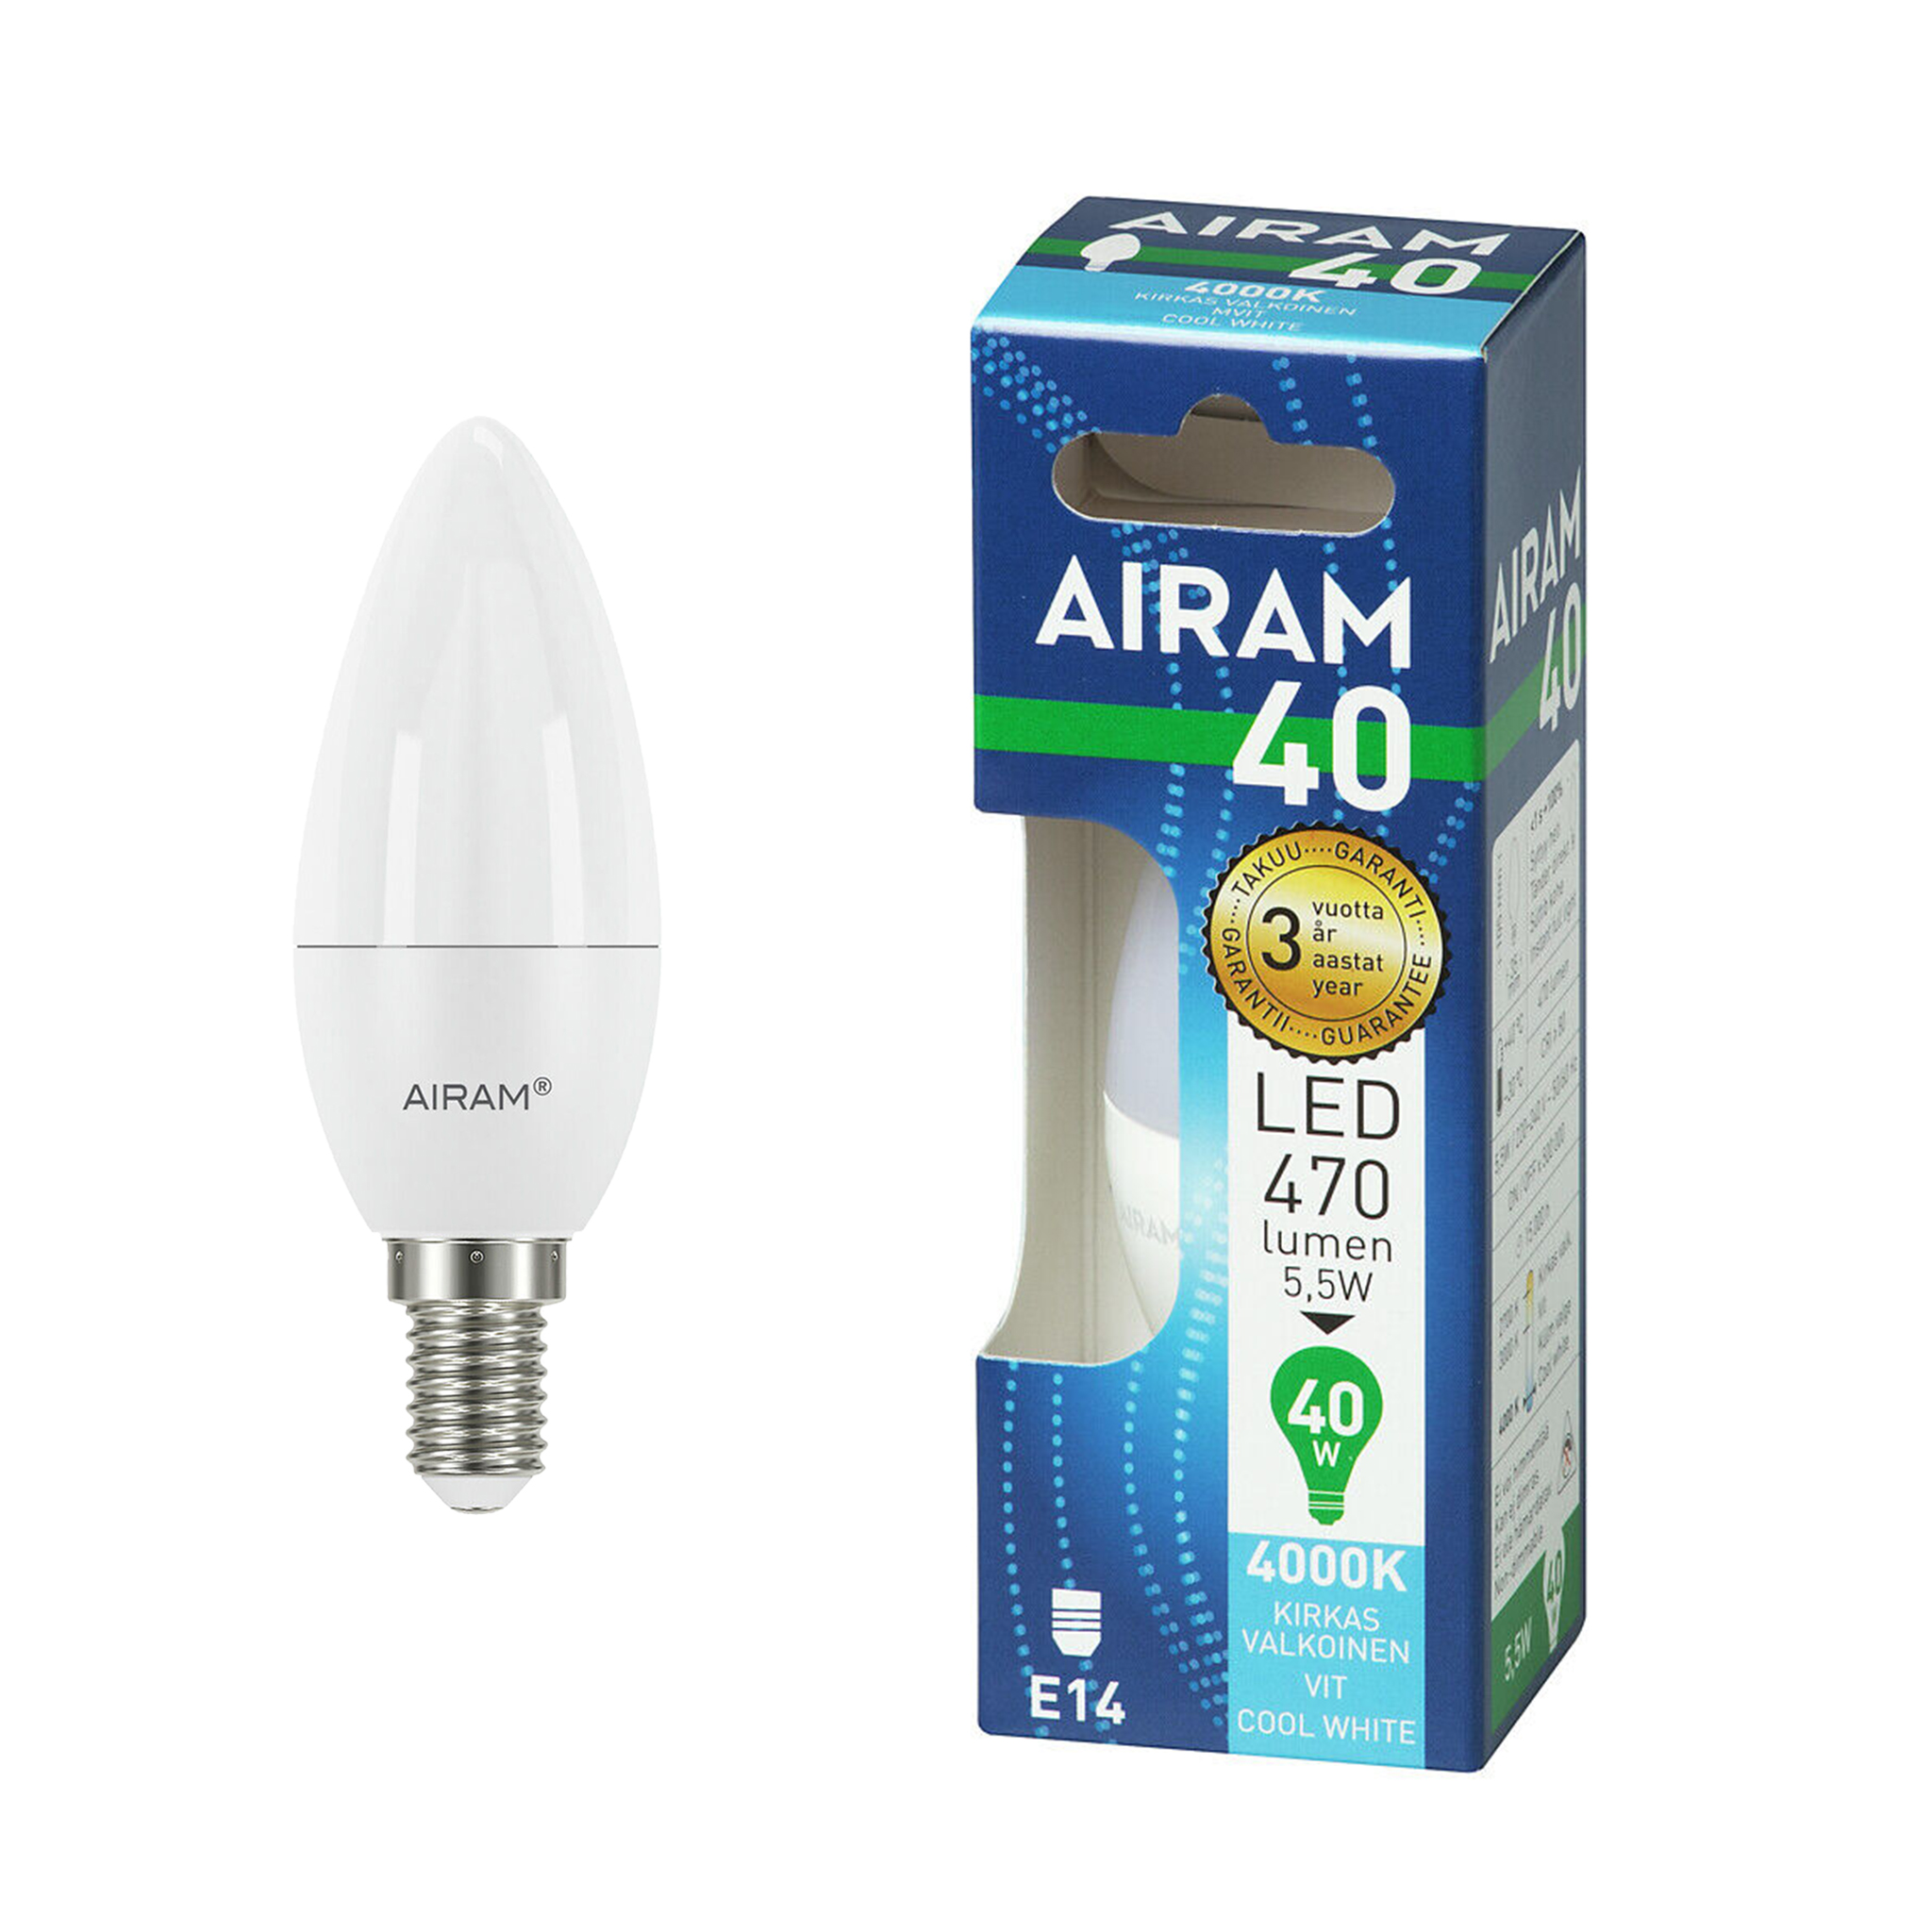 LED-lampa Airam E14 Candle, 4000K, 5.5 W / 470 lm